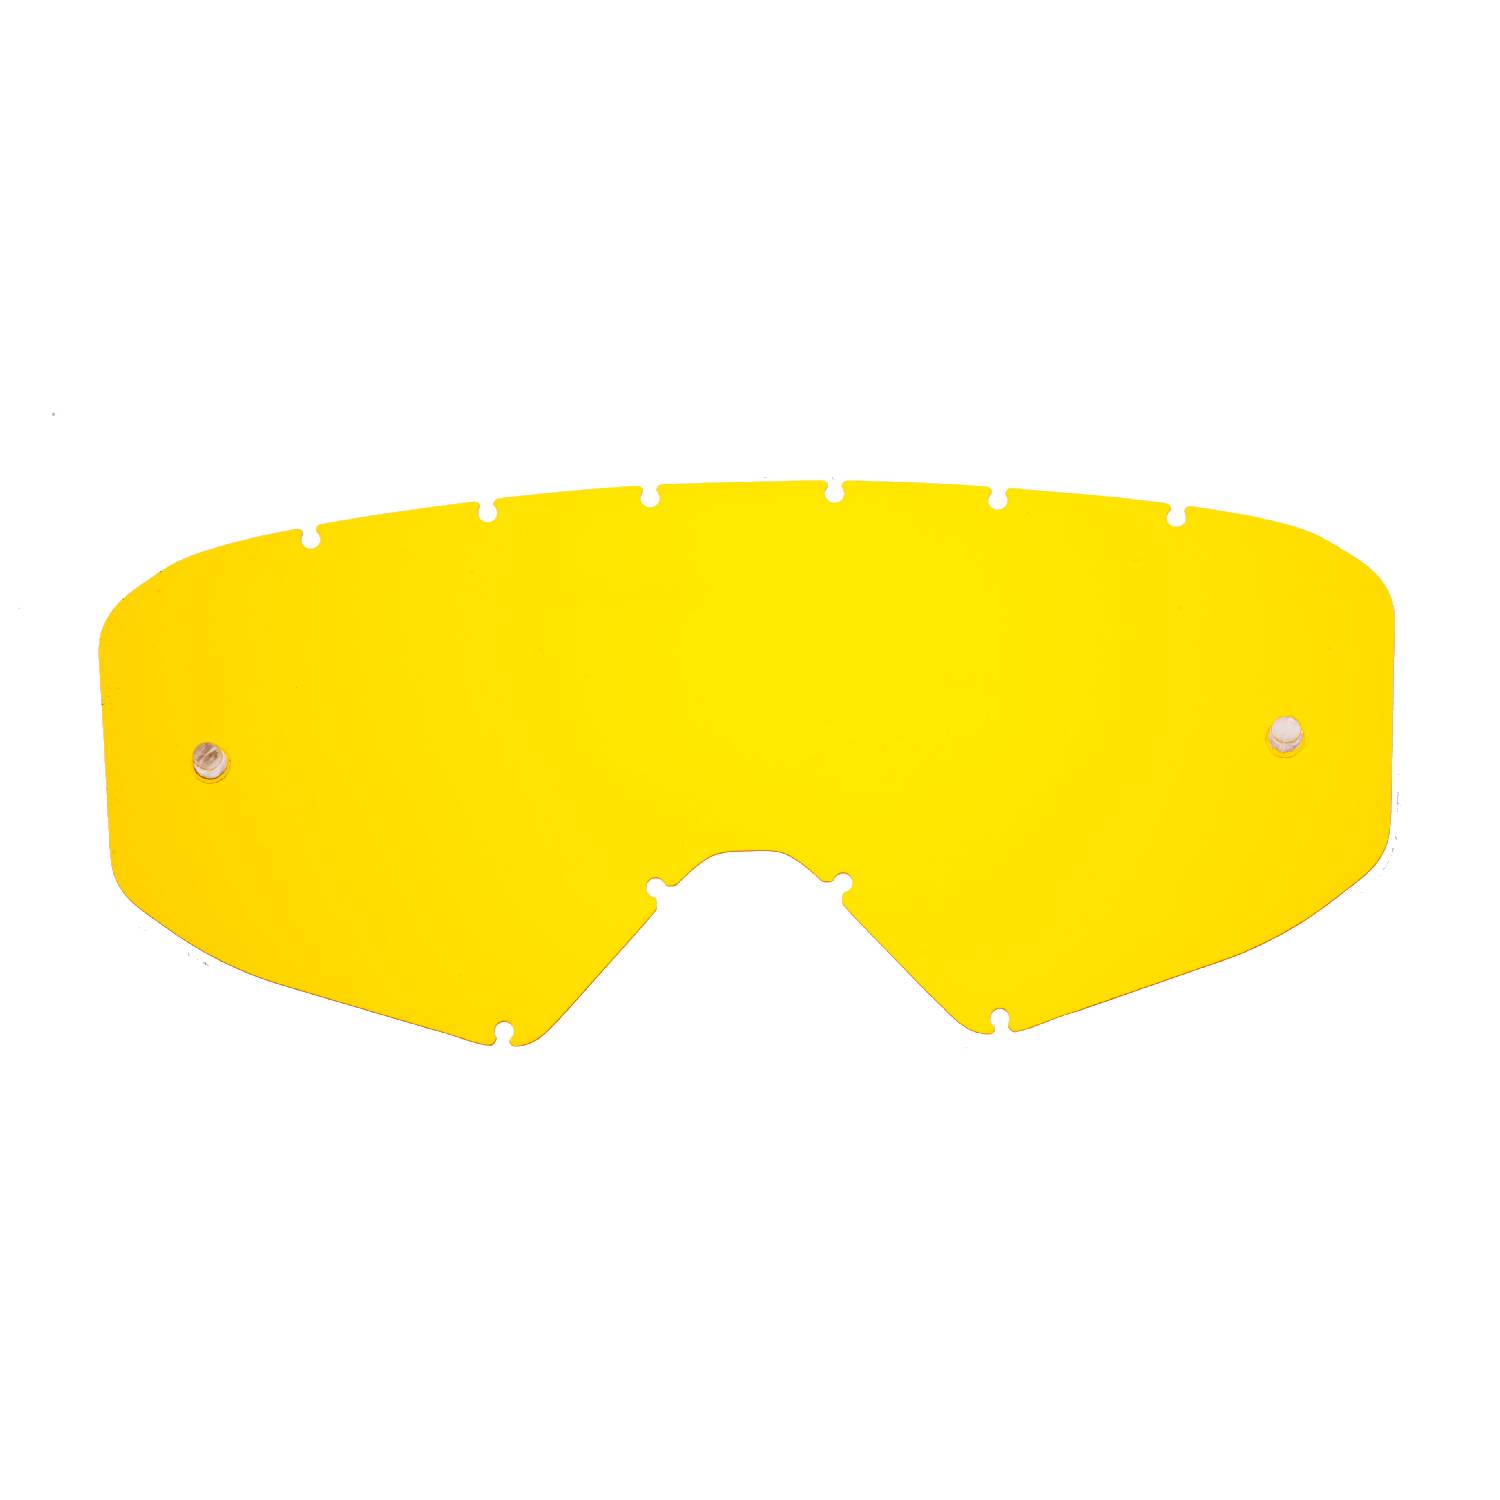 Lente di ricambio giallo compatibile per occhiale/maschera cross Ethen Zerocinque Primis / R / Ares / Ares Pluma